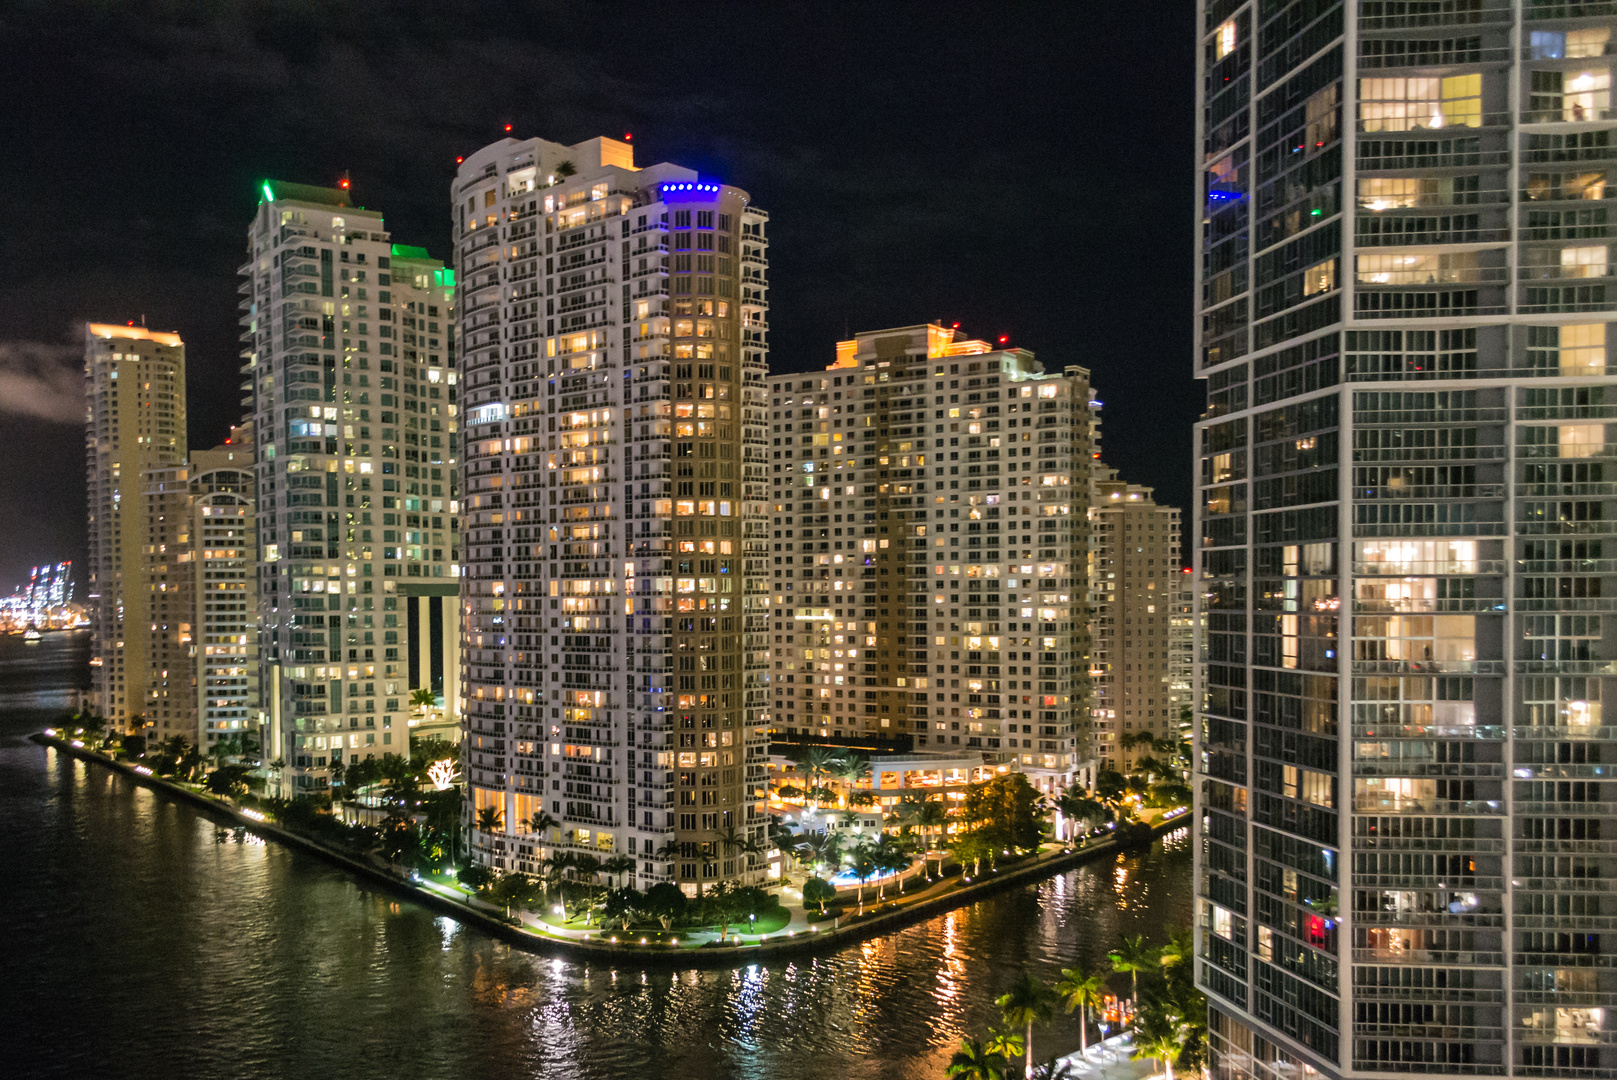 Miami Downtown bei Nacht